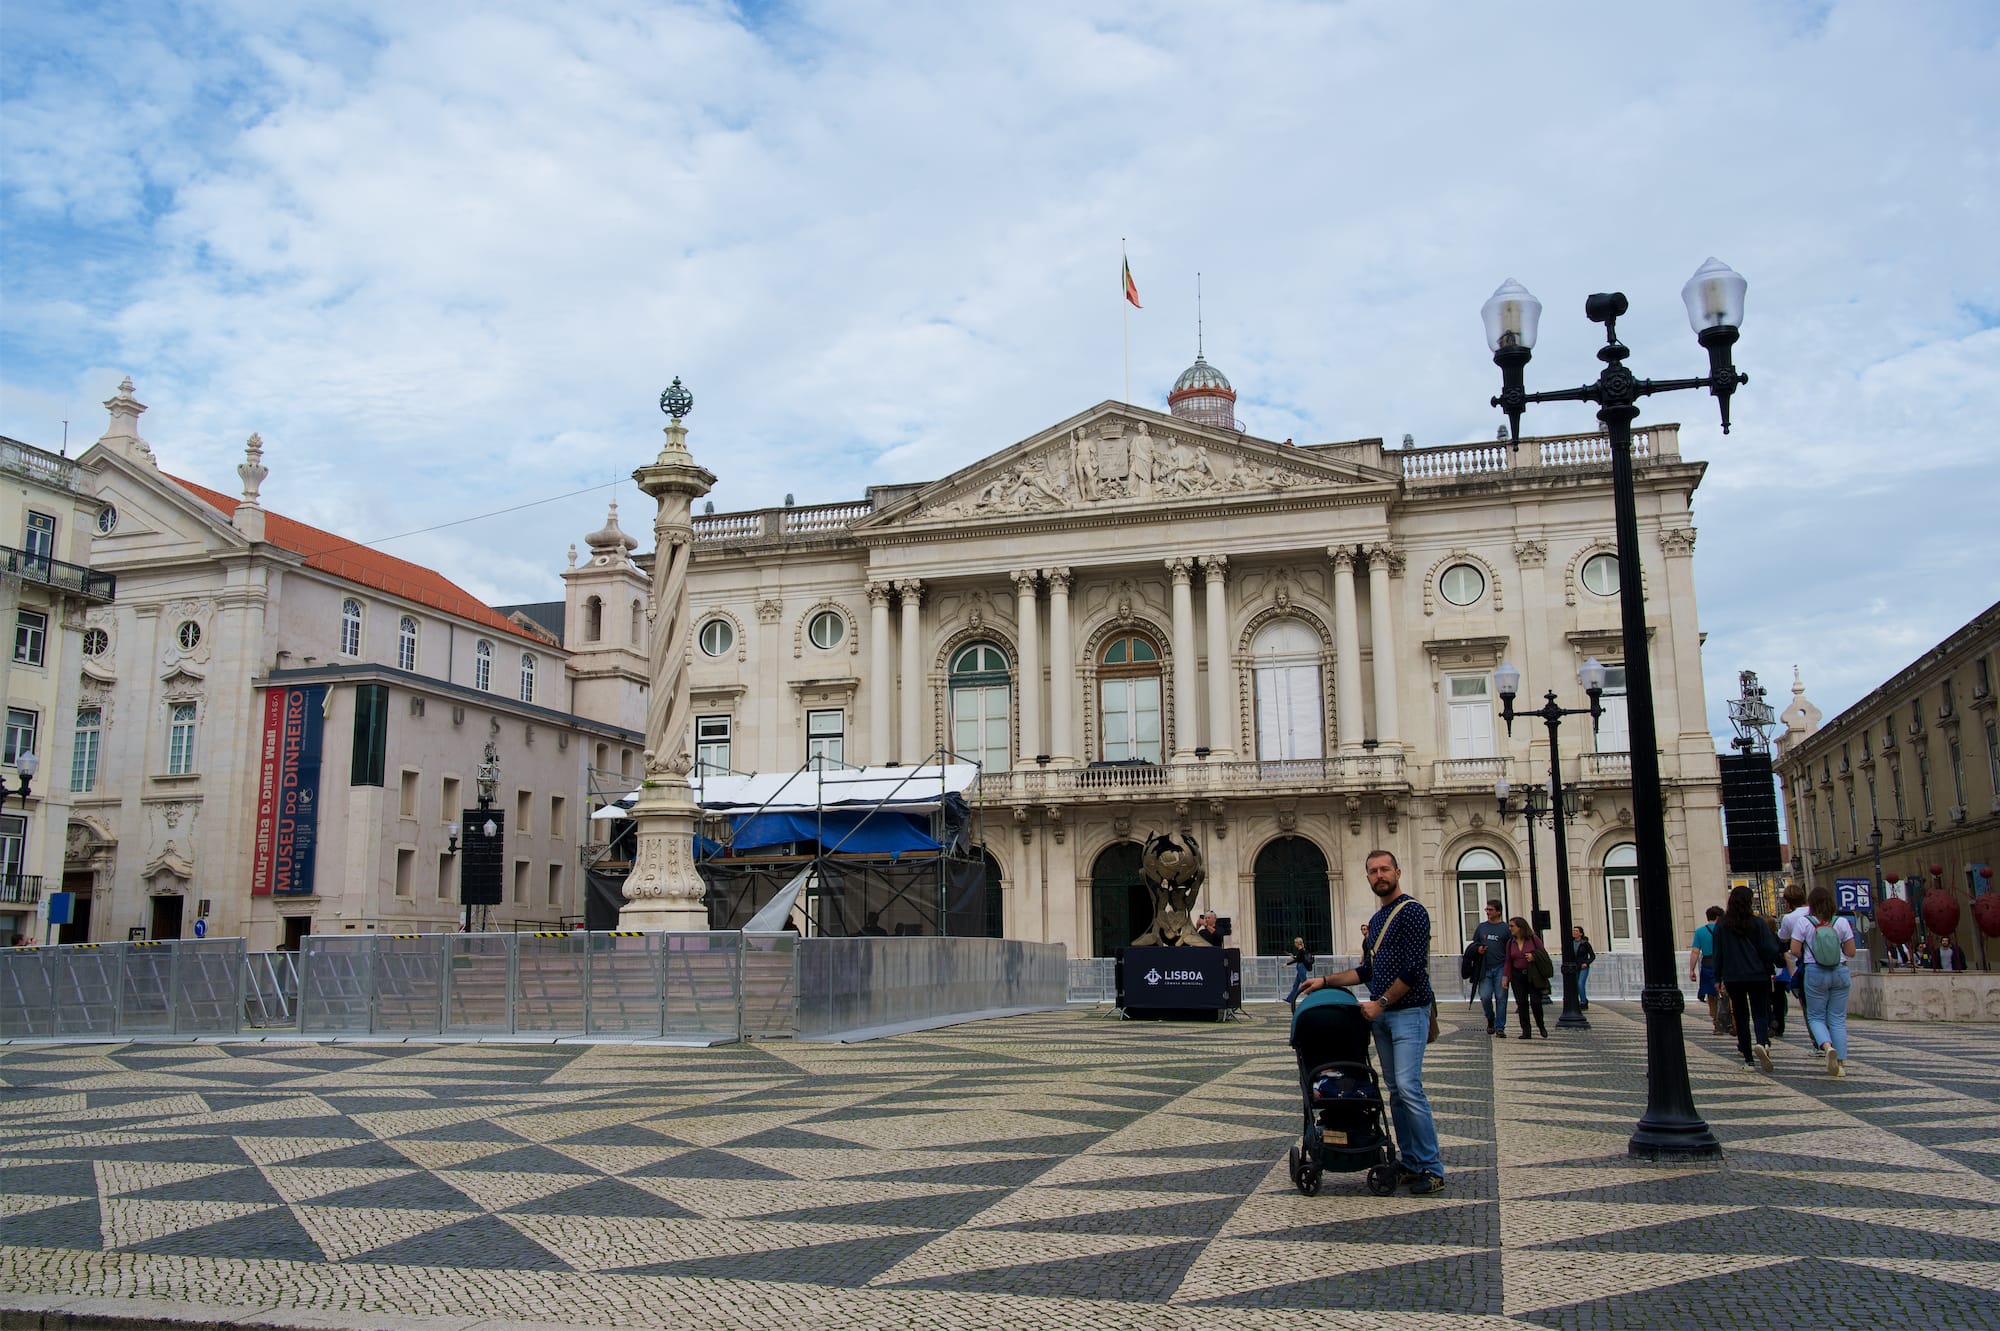 Lisbona, una città a misura di bambini